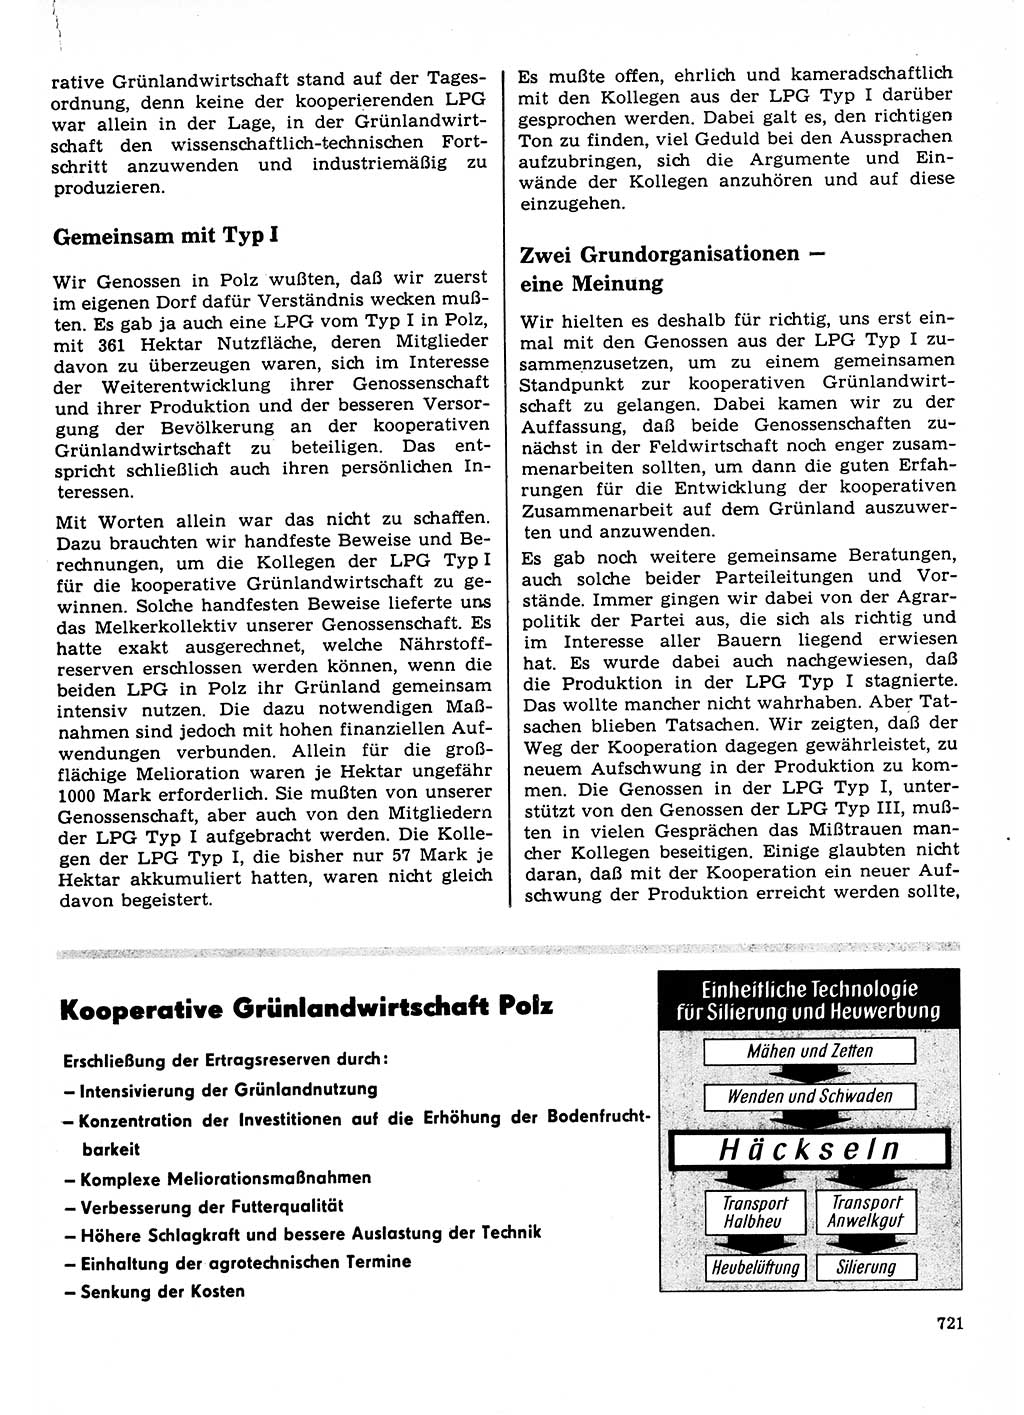 Neuer Weg (NW), Organ des Zentralkomitees (ZK) der SED (Sozialistische Einheitspartei Deutschlands) für Fragen des Parteilebens, 23. Jahrgang [Deutsche Demokratische Republik (DDR)] 1968, Seite 721 (NW ZK SED DDR 1968, S. 721)